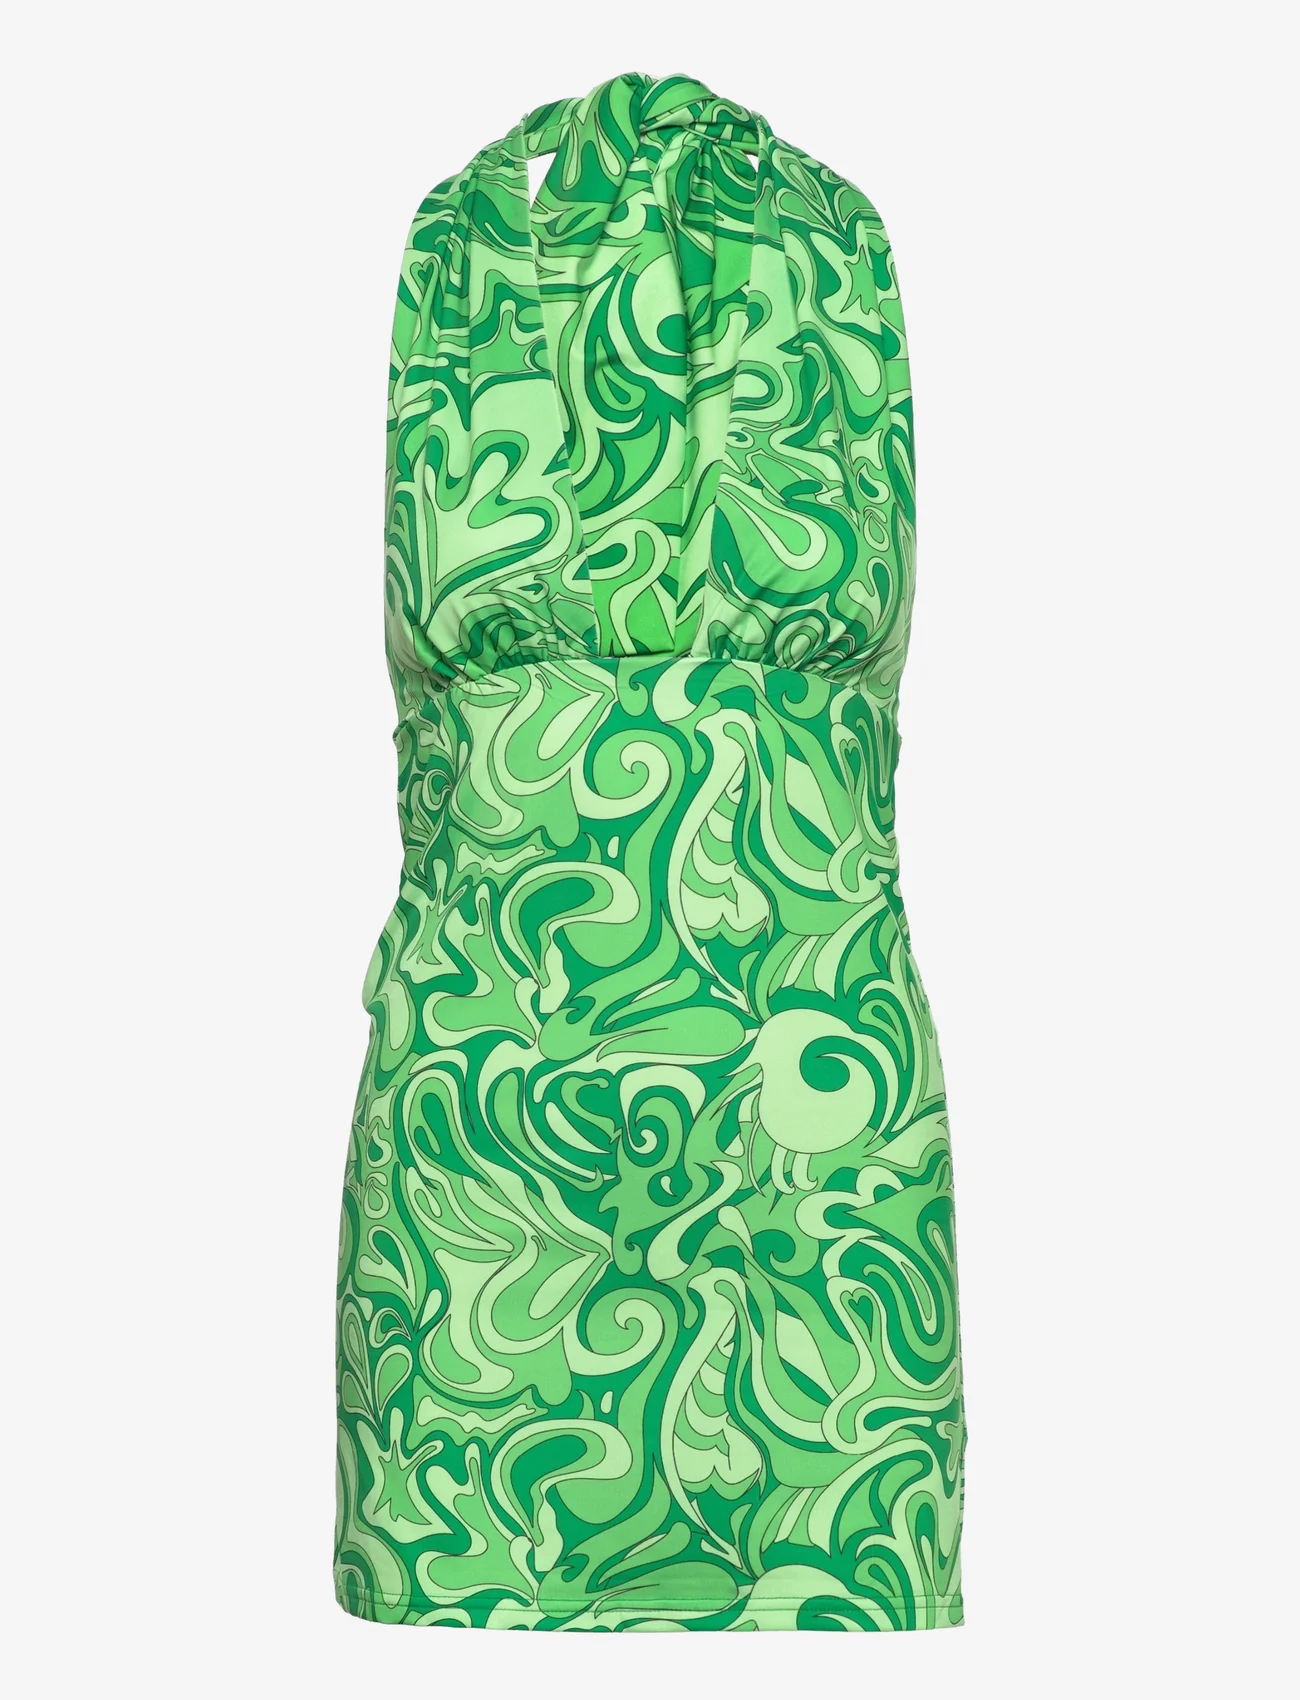 Barbara Kristoffersen by Rosemunde - Dress - etuikleider - portobello green print - 0